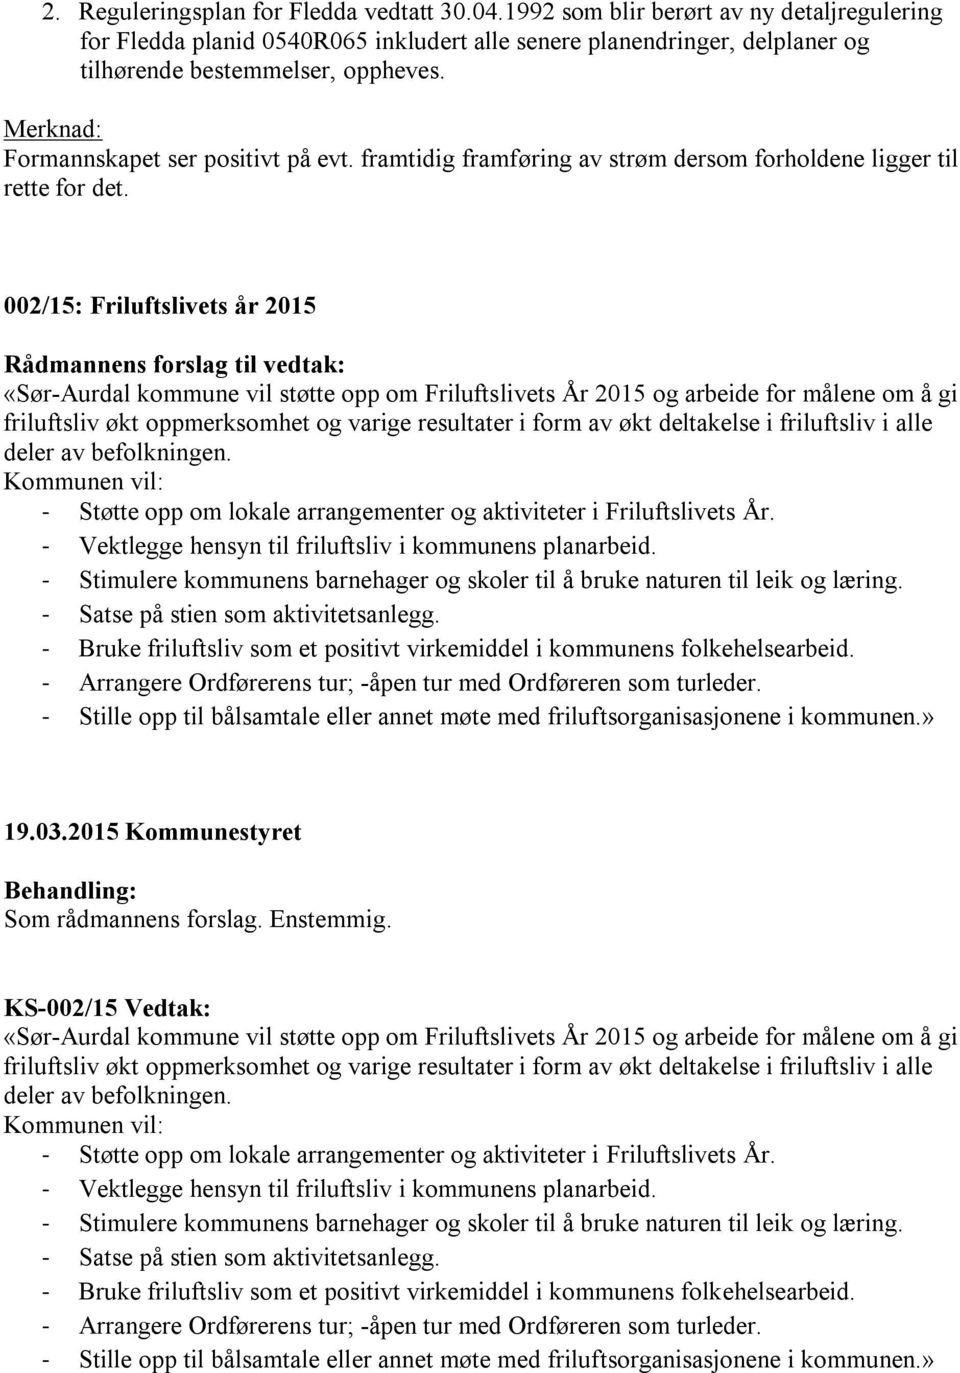 002/15: Friluftslivets år 2015 «Sør-Aurdal kommune vil støtte opp om Friluftslivets År 2015 og arbeide for målene om å gi friluftsliv økt oppmerksomhet og varige resultater i form av økt deltakelse i